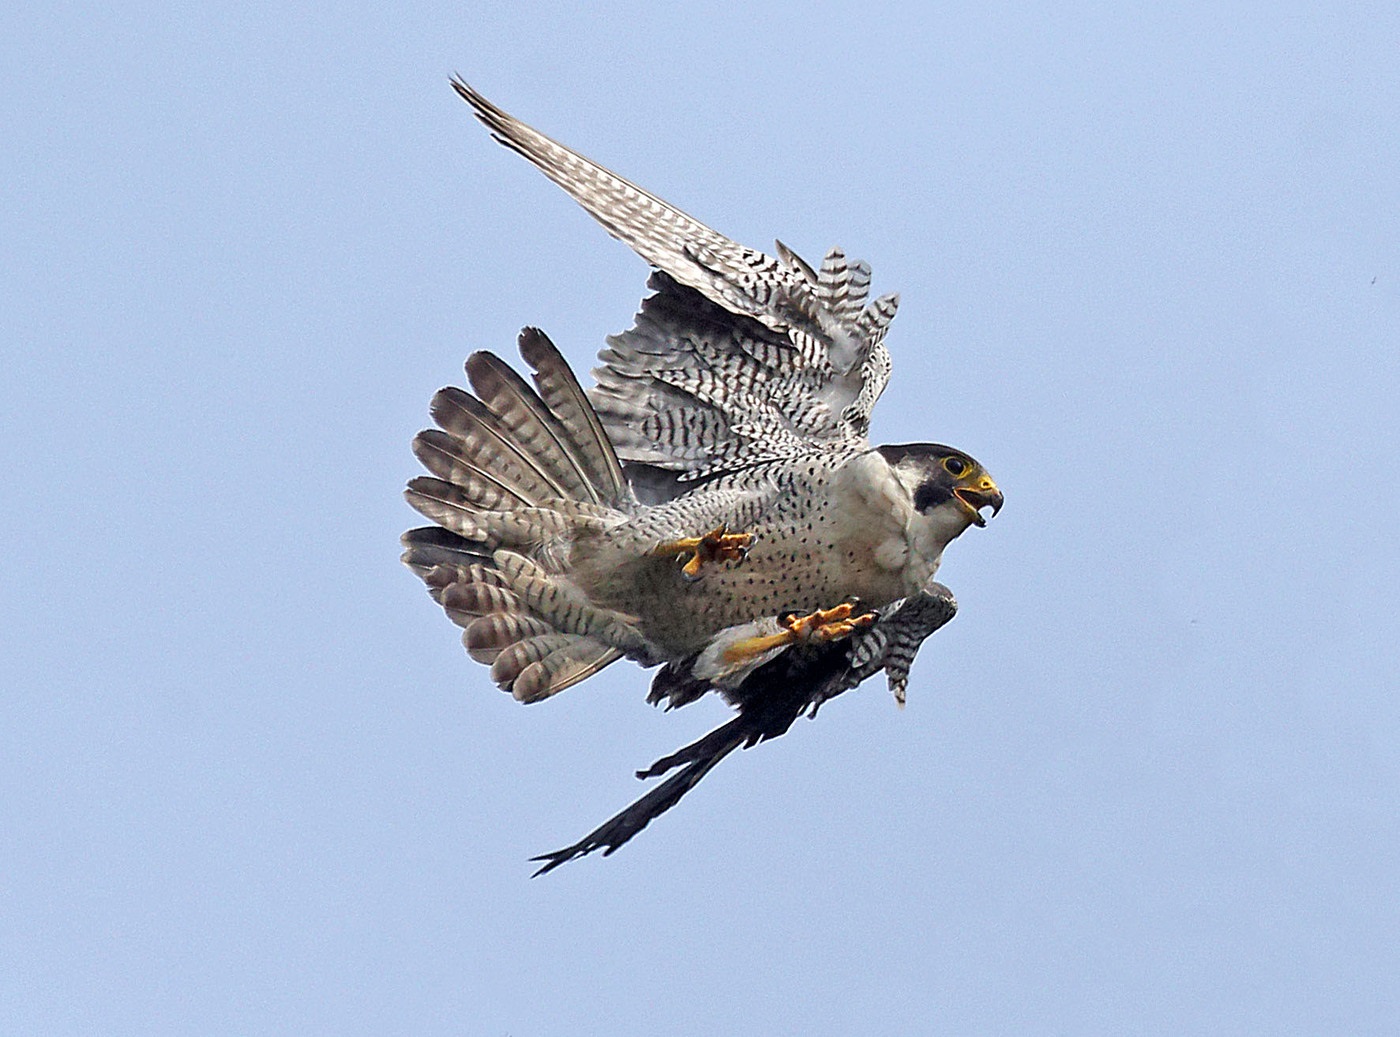 Burung Peregrine Falcon dalam Penerbangan